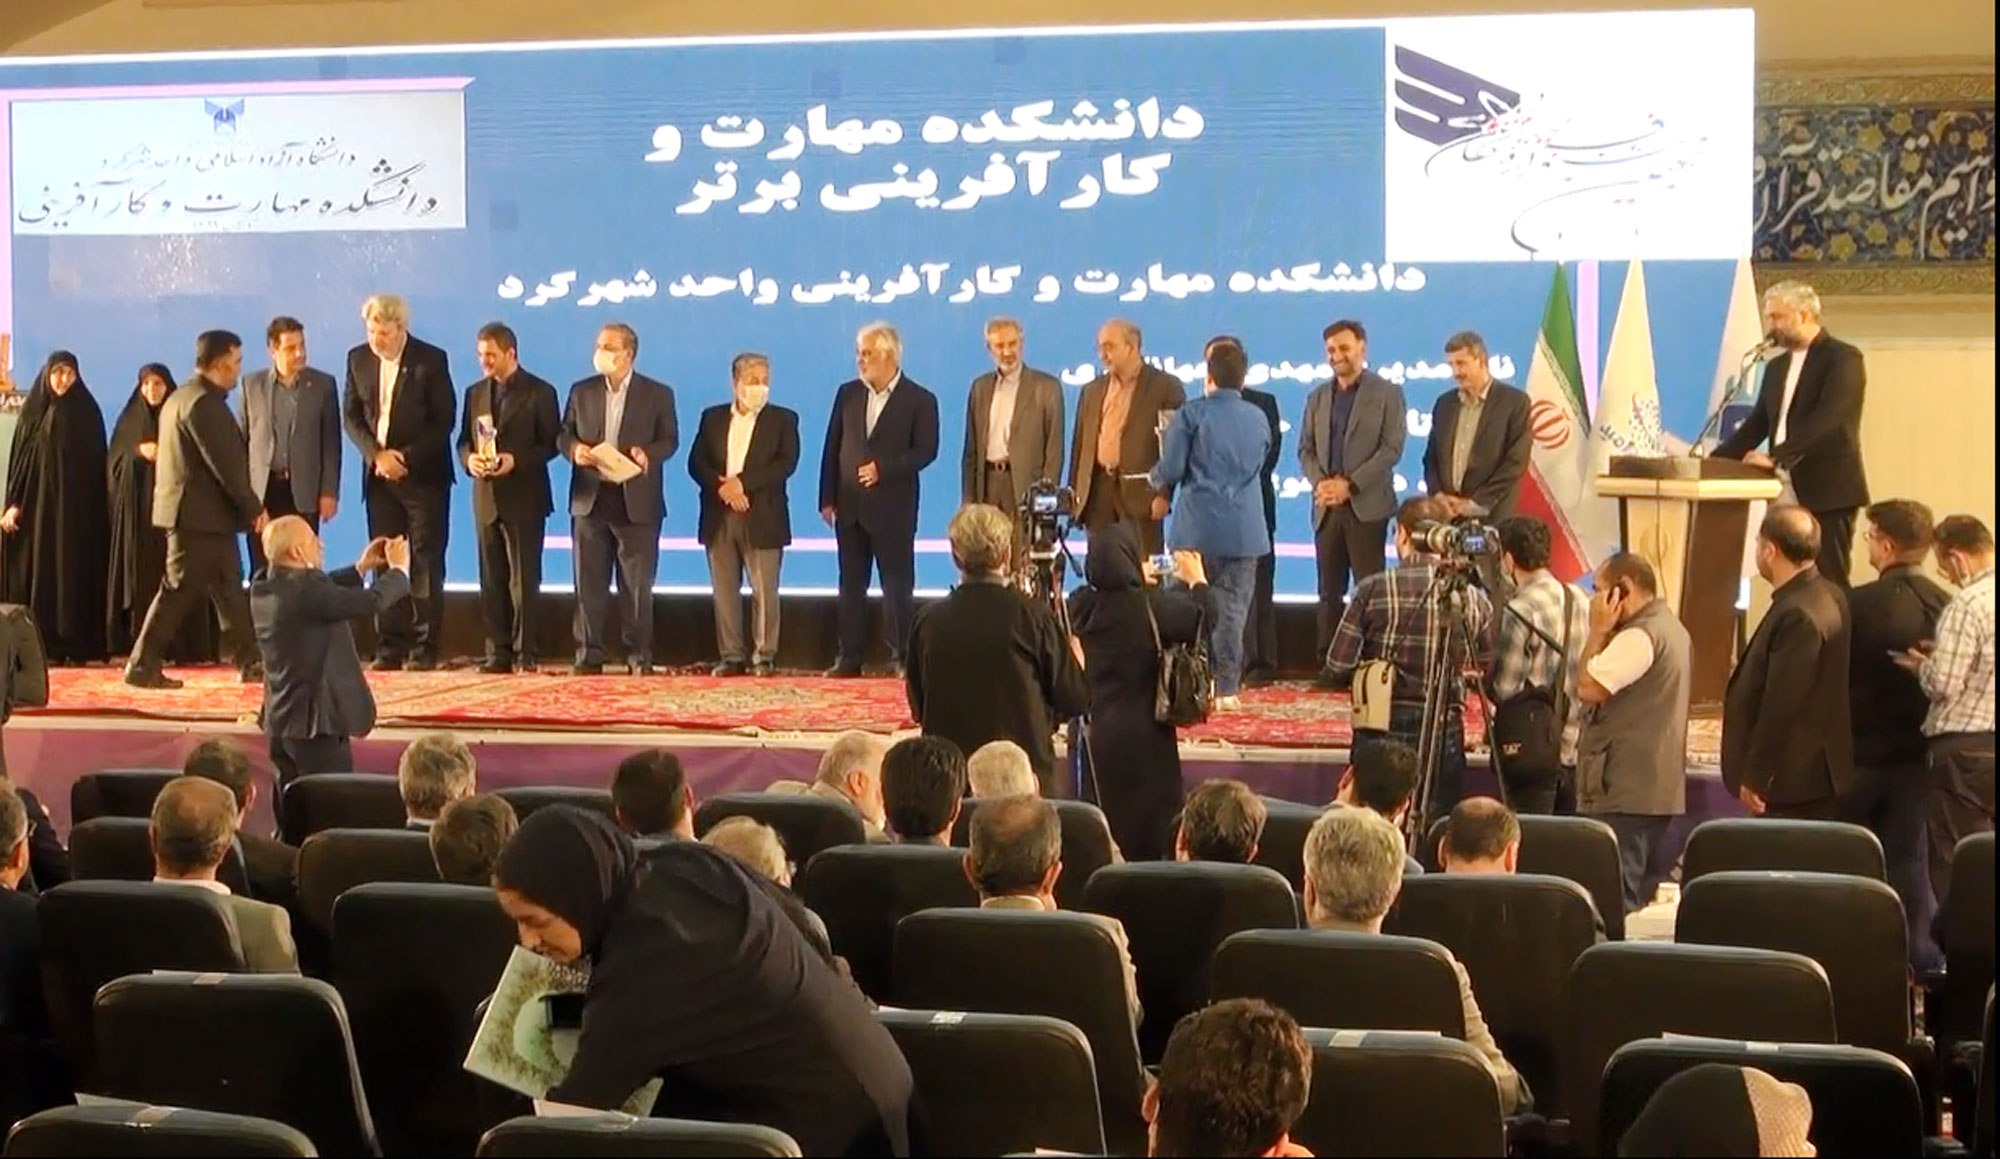 افتخارآفرینی دانشکده دانشگاه آزاد شهرکرد در جشنواره فرهیختگان